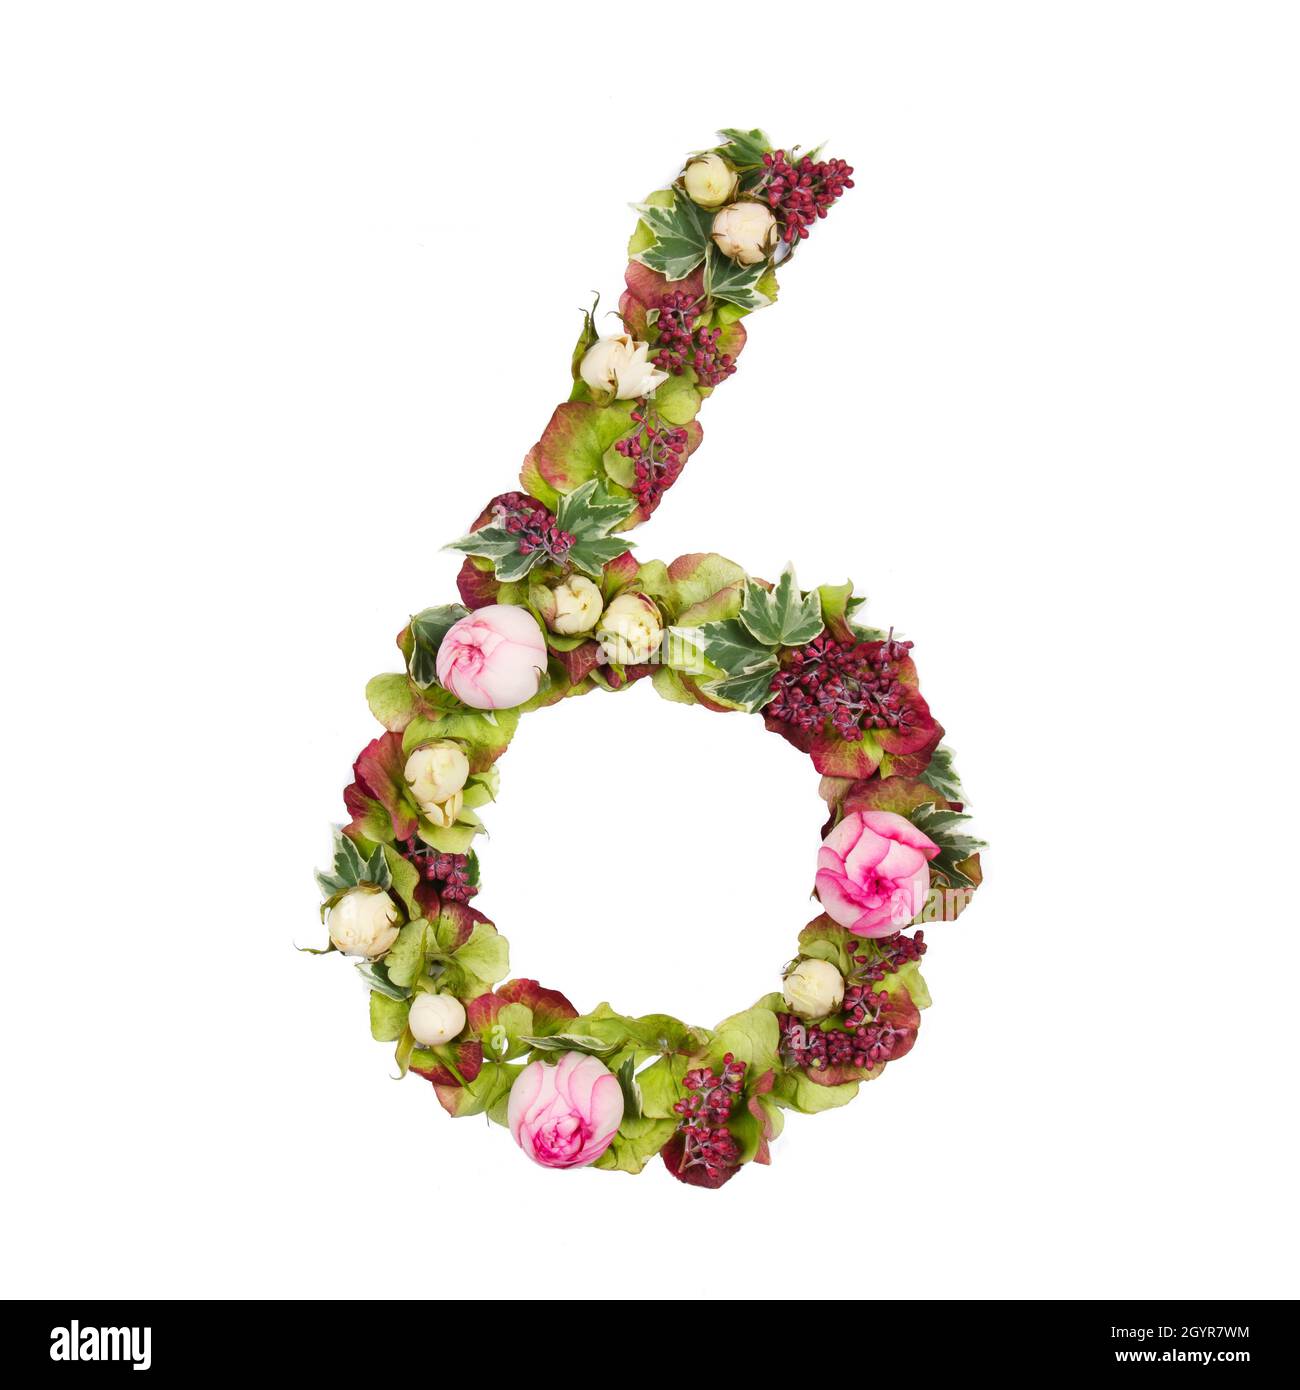 Der sechste Teil eines Satzes von Buchstaben, Zahlen und Symbolen des Alphabets, hergestellt aus Blumen, Zweigen und Blättern auf weißem Hintergrund Stockfoto